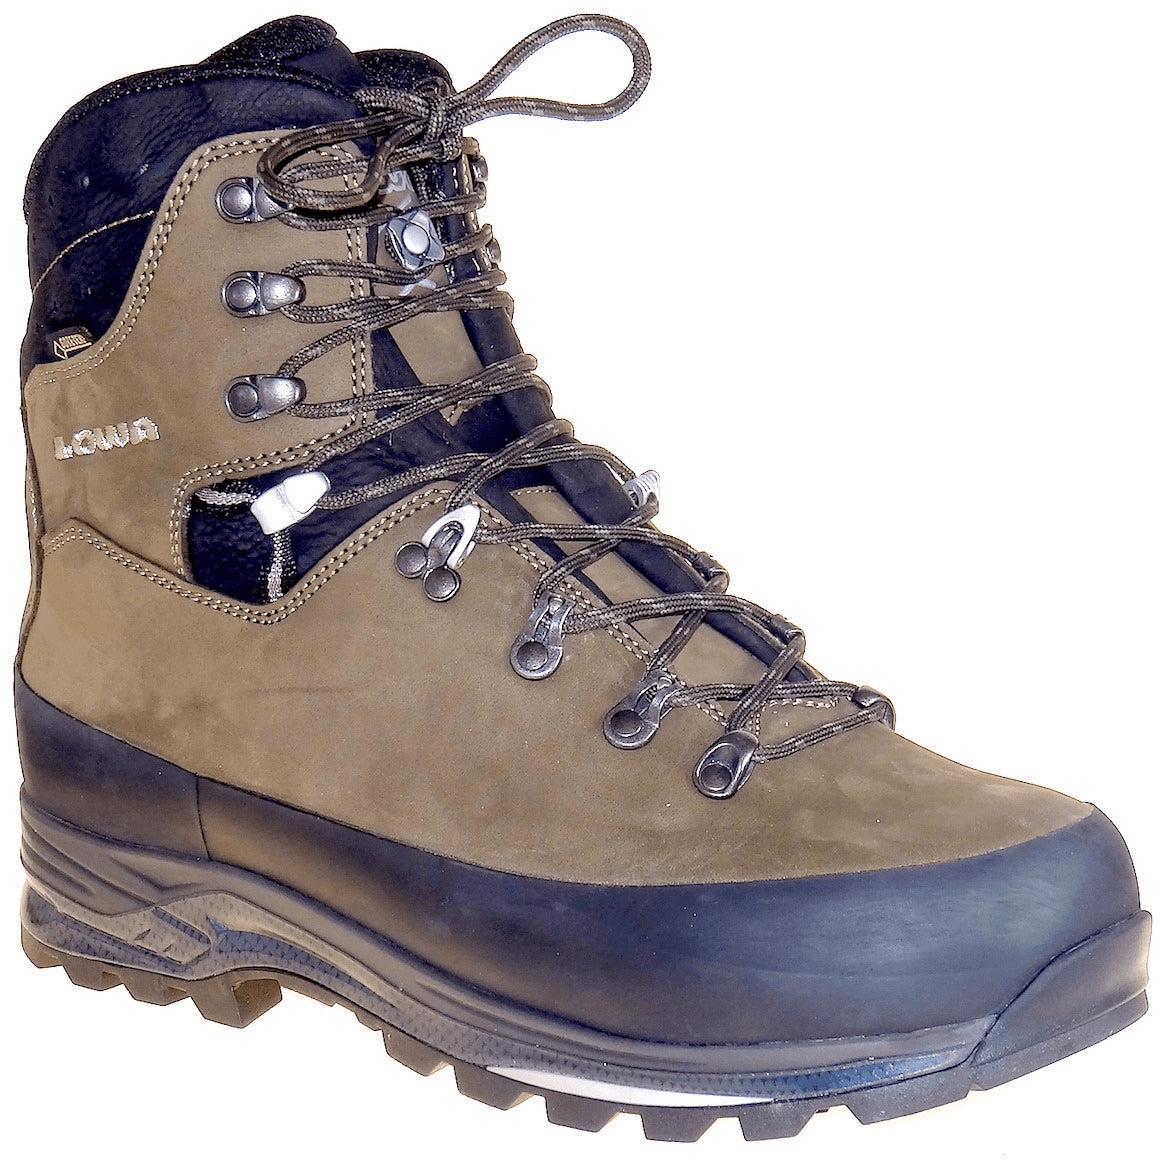 gemakkelijk te kwetsen luister Communicatie netwerk Buy Hiking Boots Online Tagged "size-13uk" - Birkenstock Hahndorf